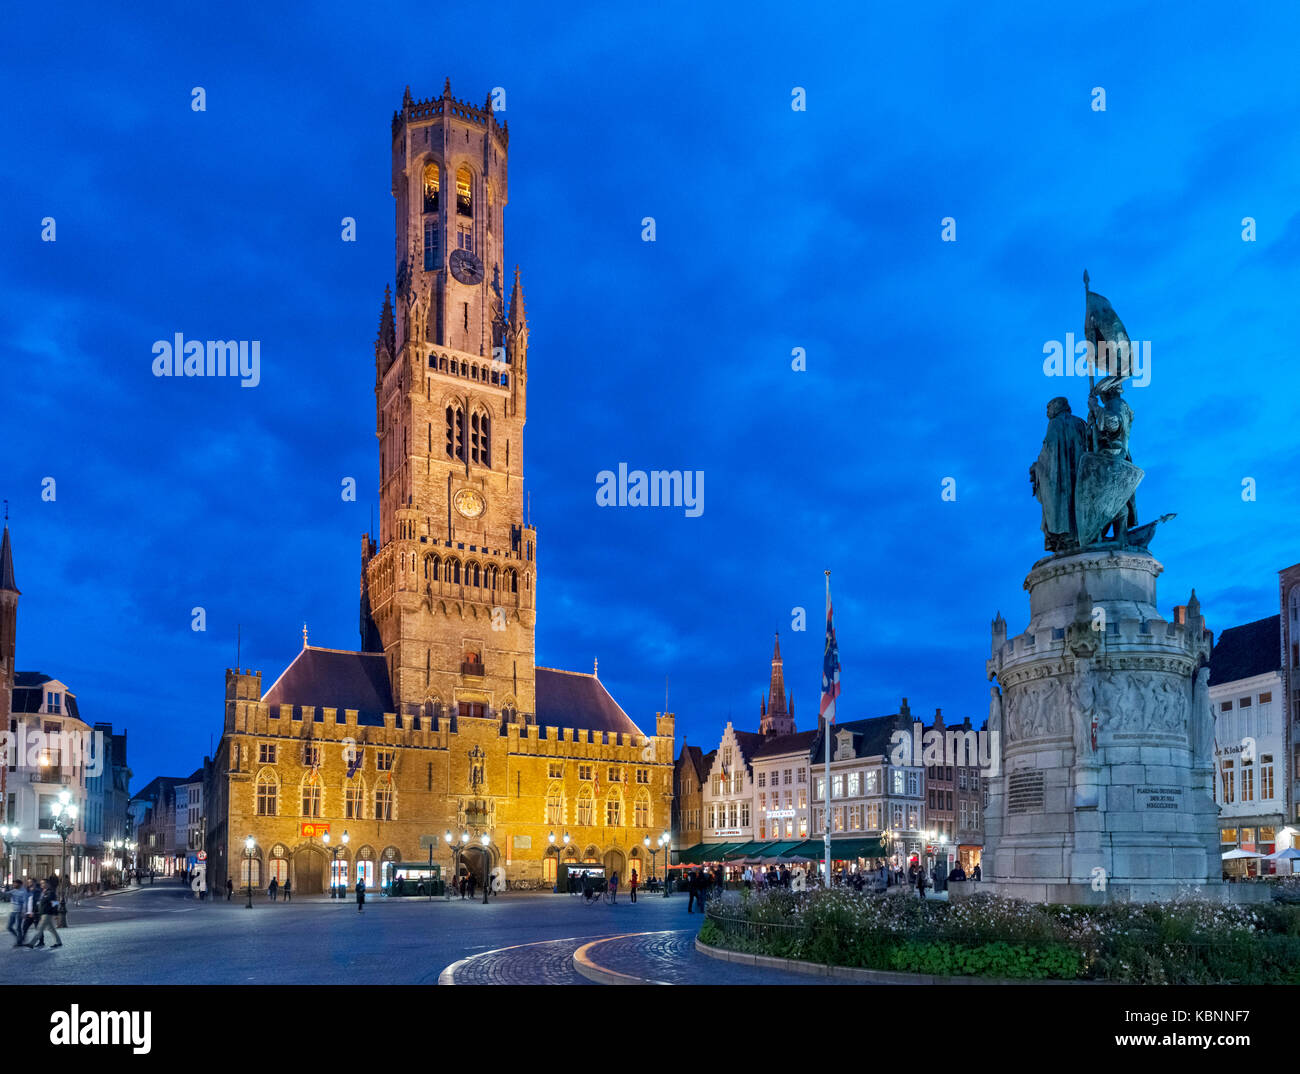 The Belfry of Bruges (Belfort van Brugge), Market Square (Markt), Bruges (Brugge), Belgium Stock Photo